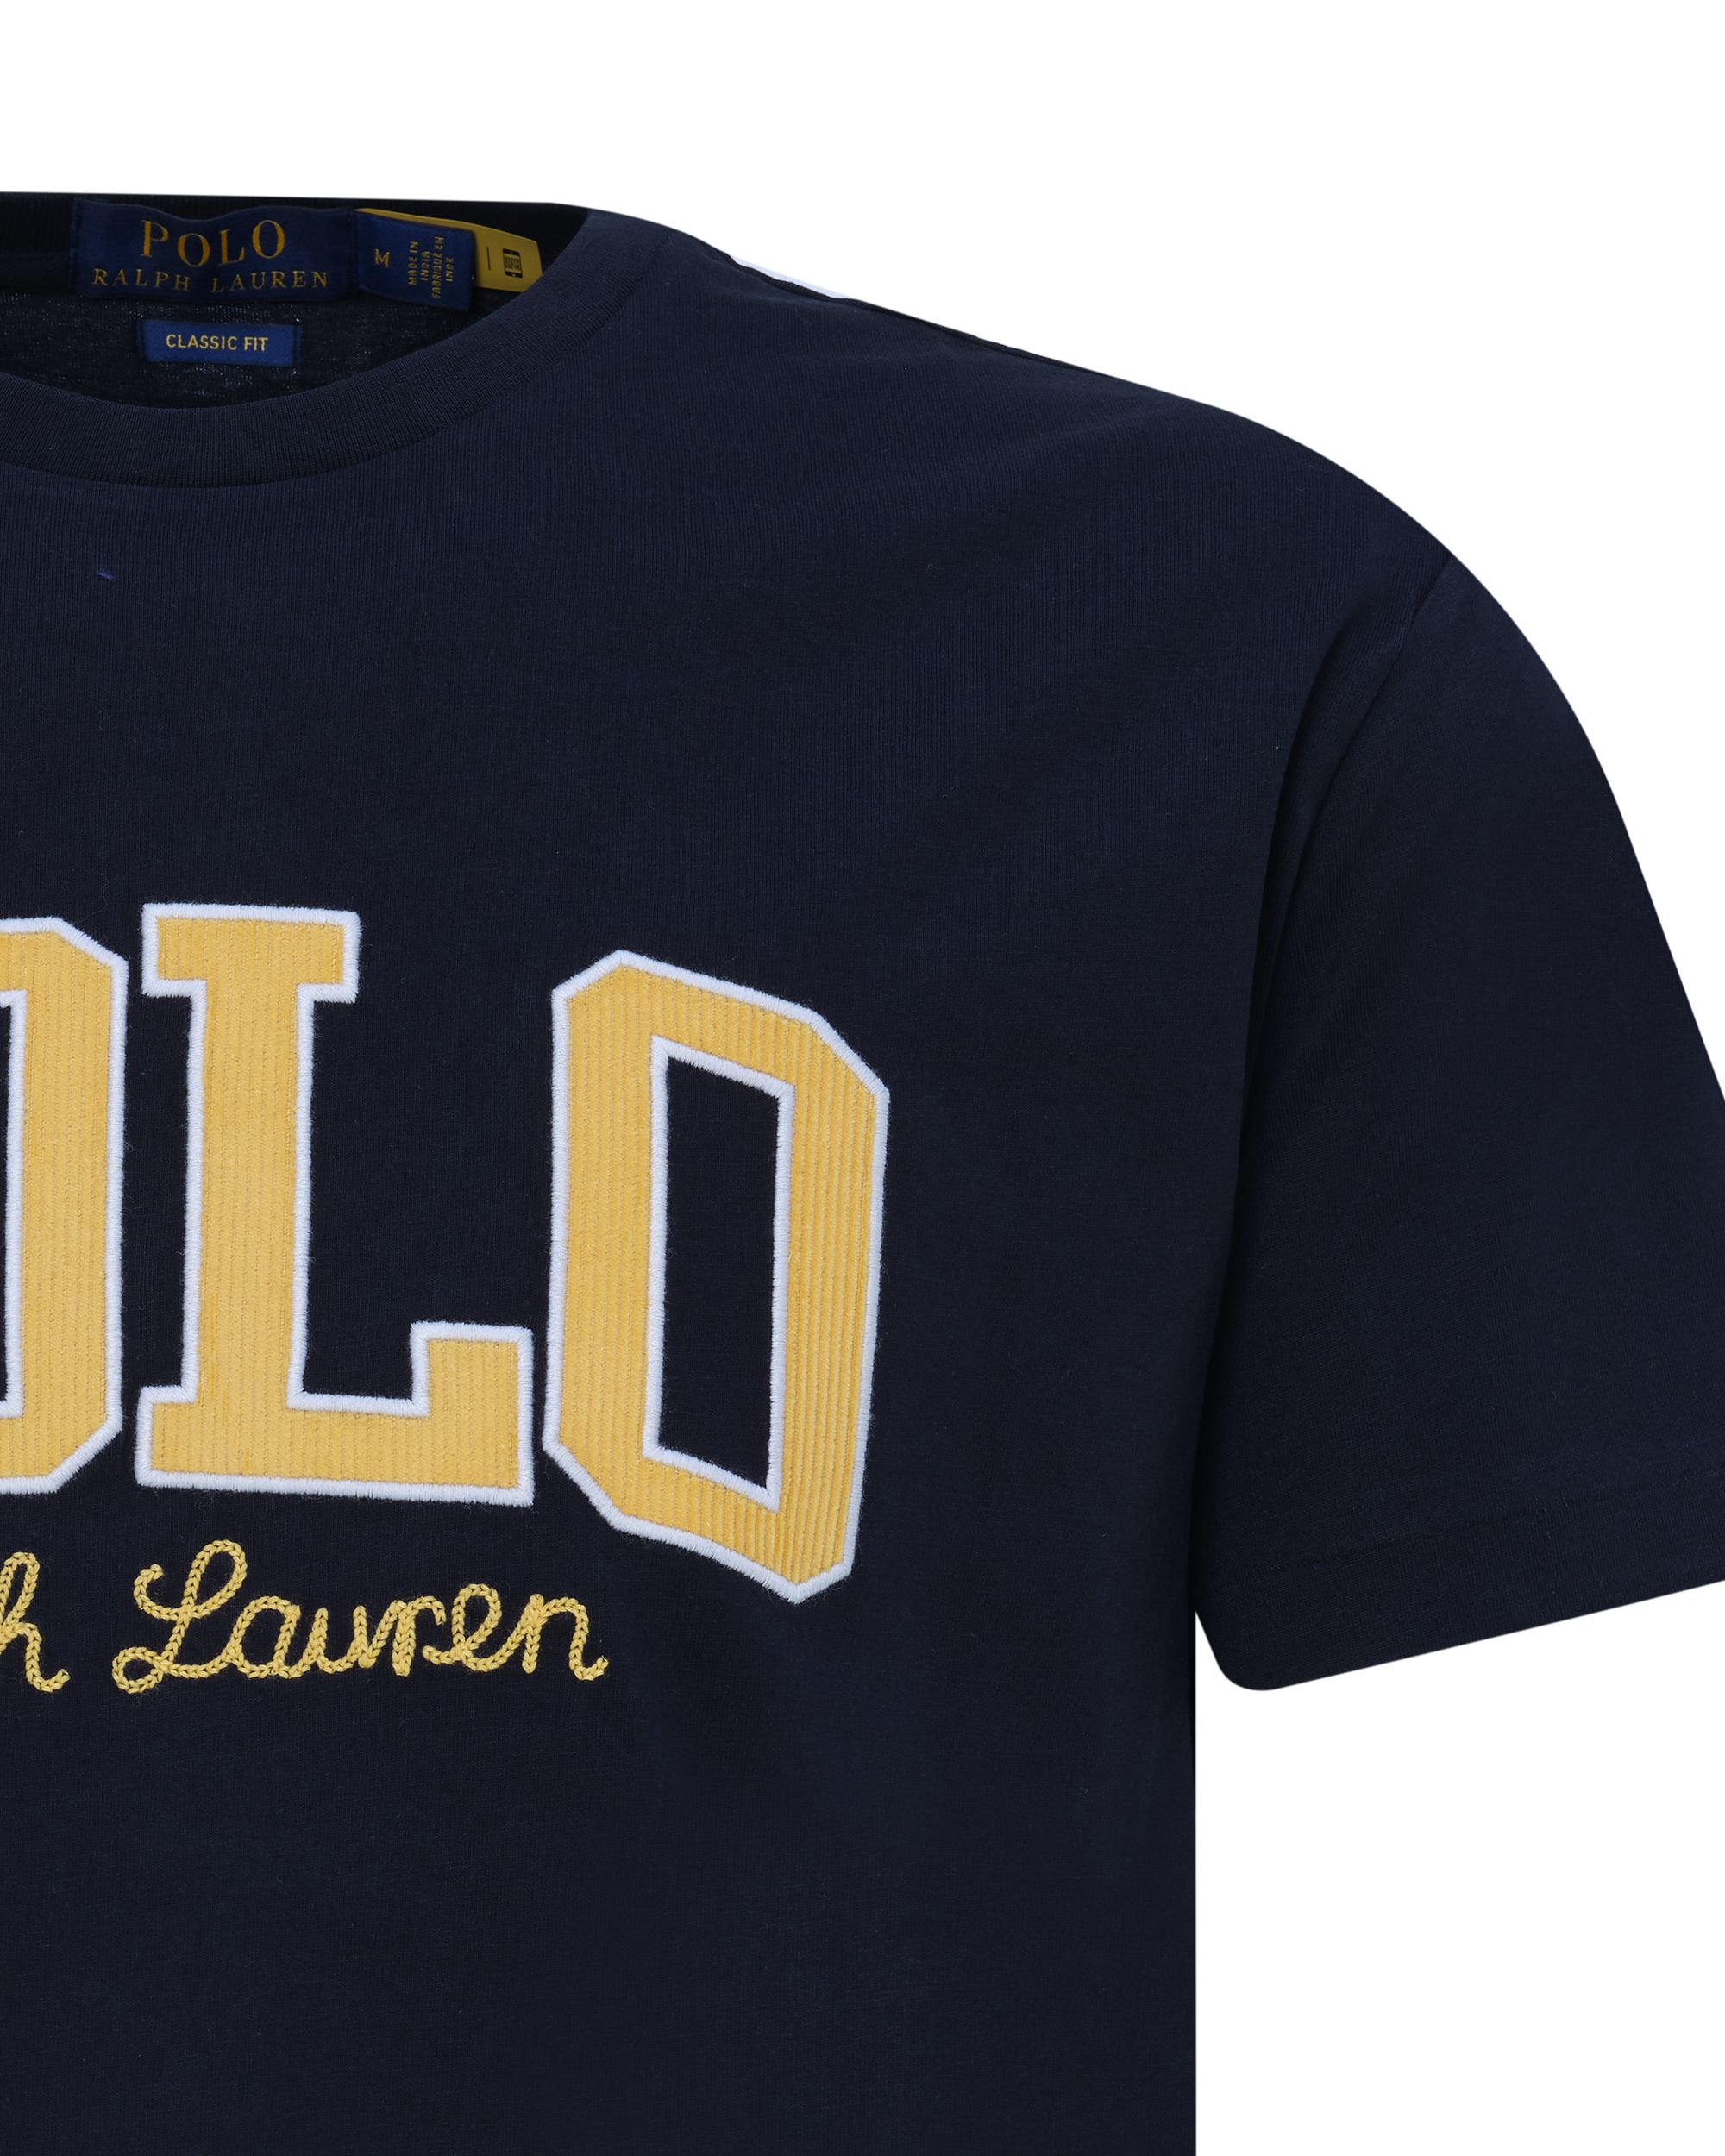 Polo Ralph Lauren - T-shirt KM Zwart 080616-001-L